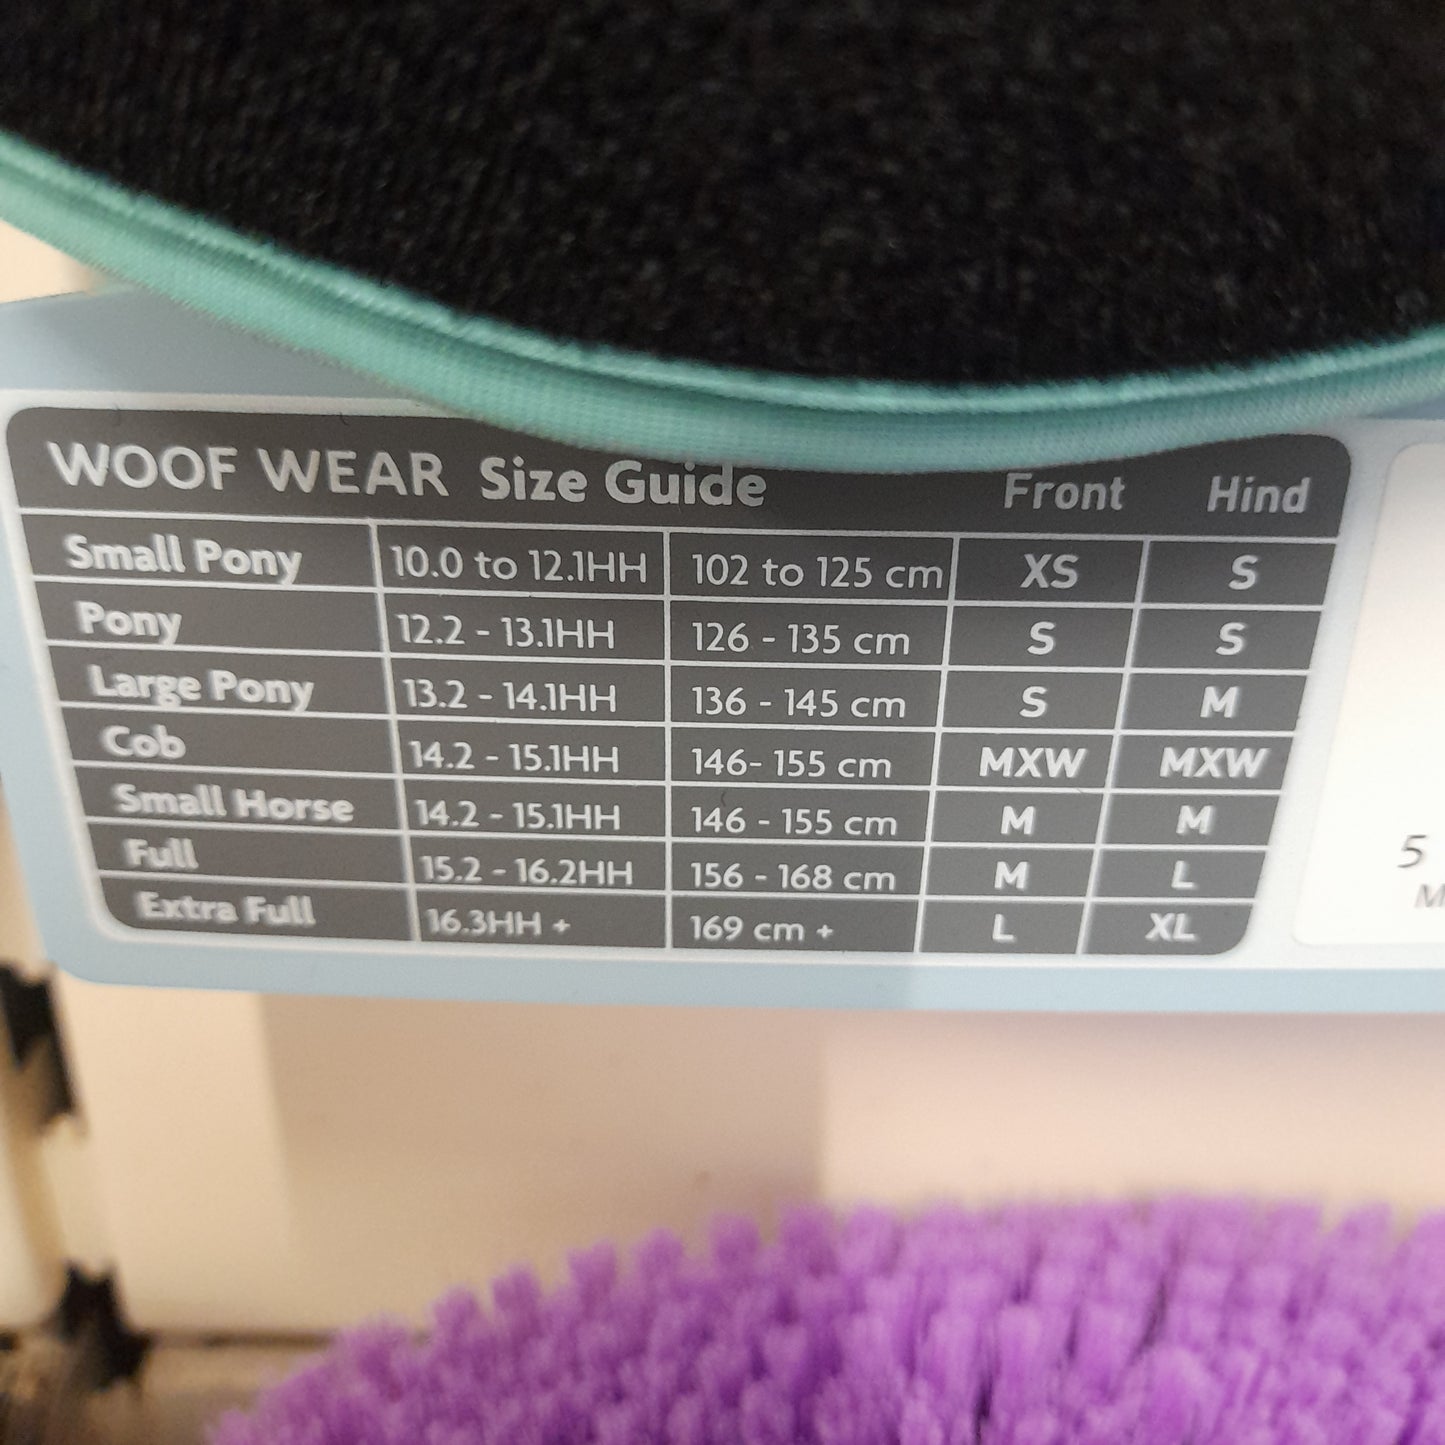 Woof Wear Dressage Wraps